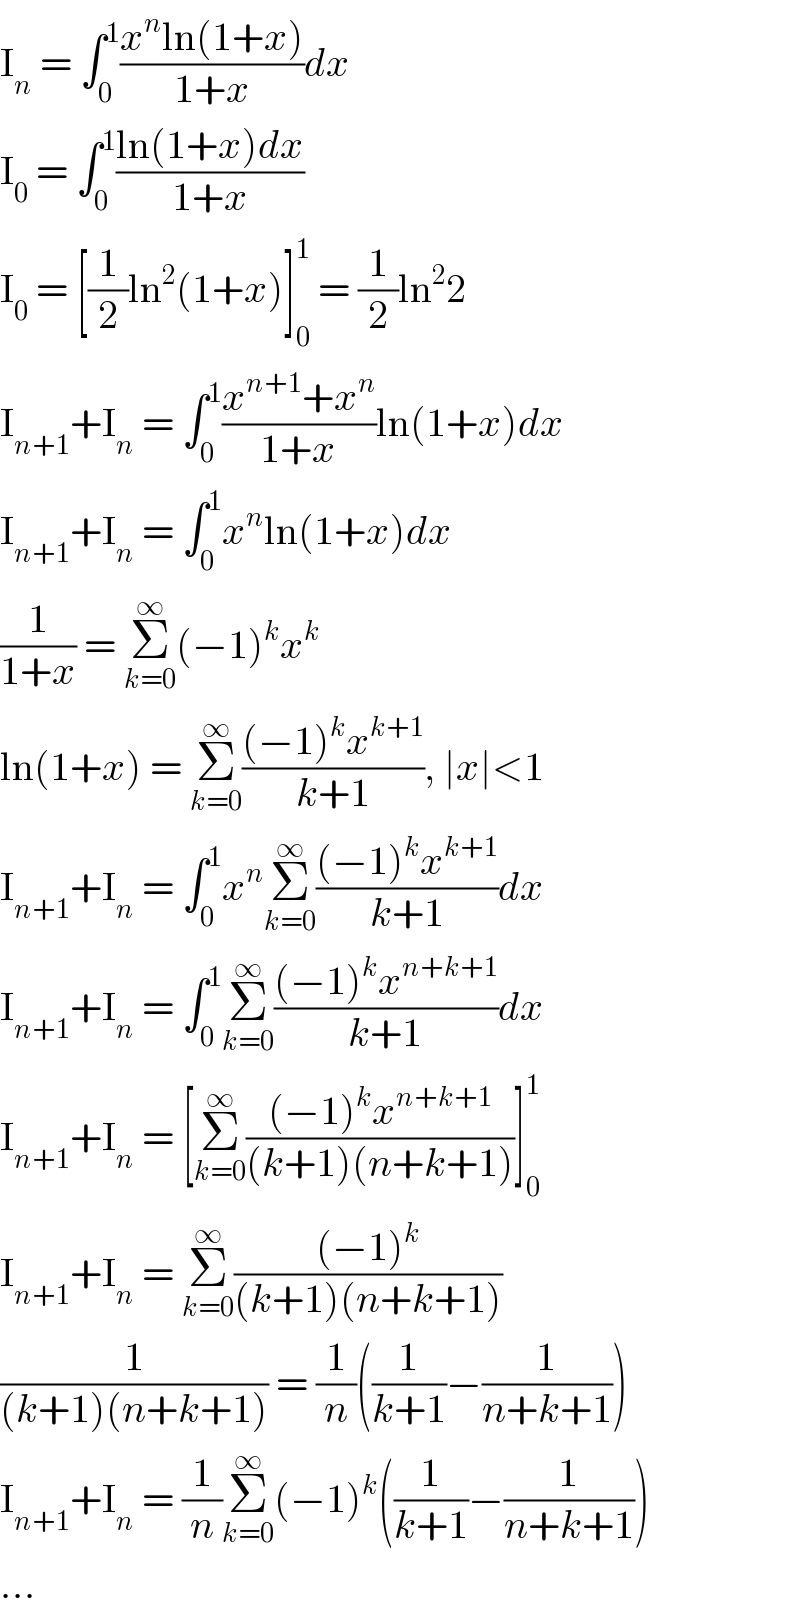 I_n  = ∫_0 ^1 ((x^n ln(1+x))/(1+x))dx  I_0  = ∫_0 ^1 ((ln(1+x)dx)/(1+x))  I_0  = [(1/2)ln^2 (1+x)]_0 ^1  = (1/2)ln^2 2  I_(n+1) +I_n  = ∫_0 ^1 ((x^(n+1) +x^n )/(1+x))ln(1+x)dx  I_(n+1) +I_n  = ∫_0 ^1 x^n ln(1+x)dx  (1/(1+x)) = Σ_(k=0) ^∞ (−1)^k x^k   ln(1+x) = Σ_(k=0) ^∞ (((−1)^k x^(k+1) )/(k+1)), ∣x∣<1  I_(n+1) +I_n  = ∫_0 ^1 x^n Σ_(k=0) ^∞ (((−1)^k x^(k+1) )/(k+1))dx  I_(n+1) +I_n  = ∫_0 ^1 Σ_(k=0) ^∞ (((−1)^k x^(n+k+1) )/(k+1))dx  I_(n+1) +I_n  = [Σ_(k=0) ^∞ (((−1)^k x^(n+k+1) )/((k+1)(n+k+1)))]_0 ^1   I_(n+1) +I_n  = Σ_(k=0) ^∞ (((−1)^k )/((k+1)(n+k+1)))  (1/((k+1)(n+k+1))) = (1/n)((1/(k+1))−(1/(n+k+1)))  I_(n+1) +I_n  = (1/n)Σ_(k=0) ^∞ (−1)^k ((1/(k+1))−(1/(n+k+1)))  ...  